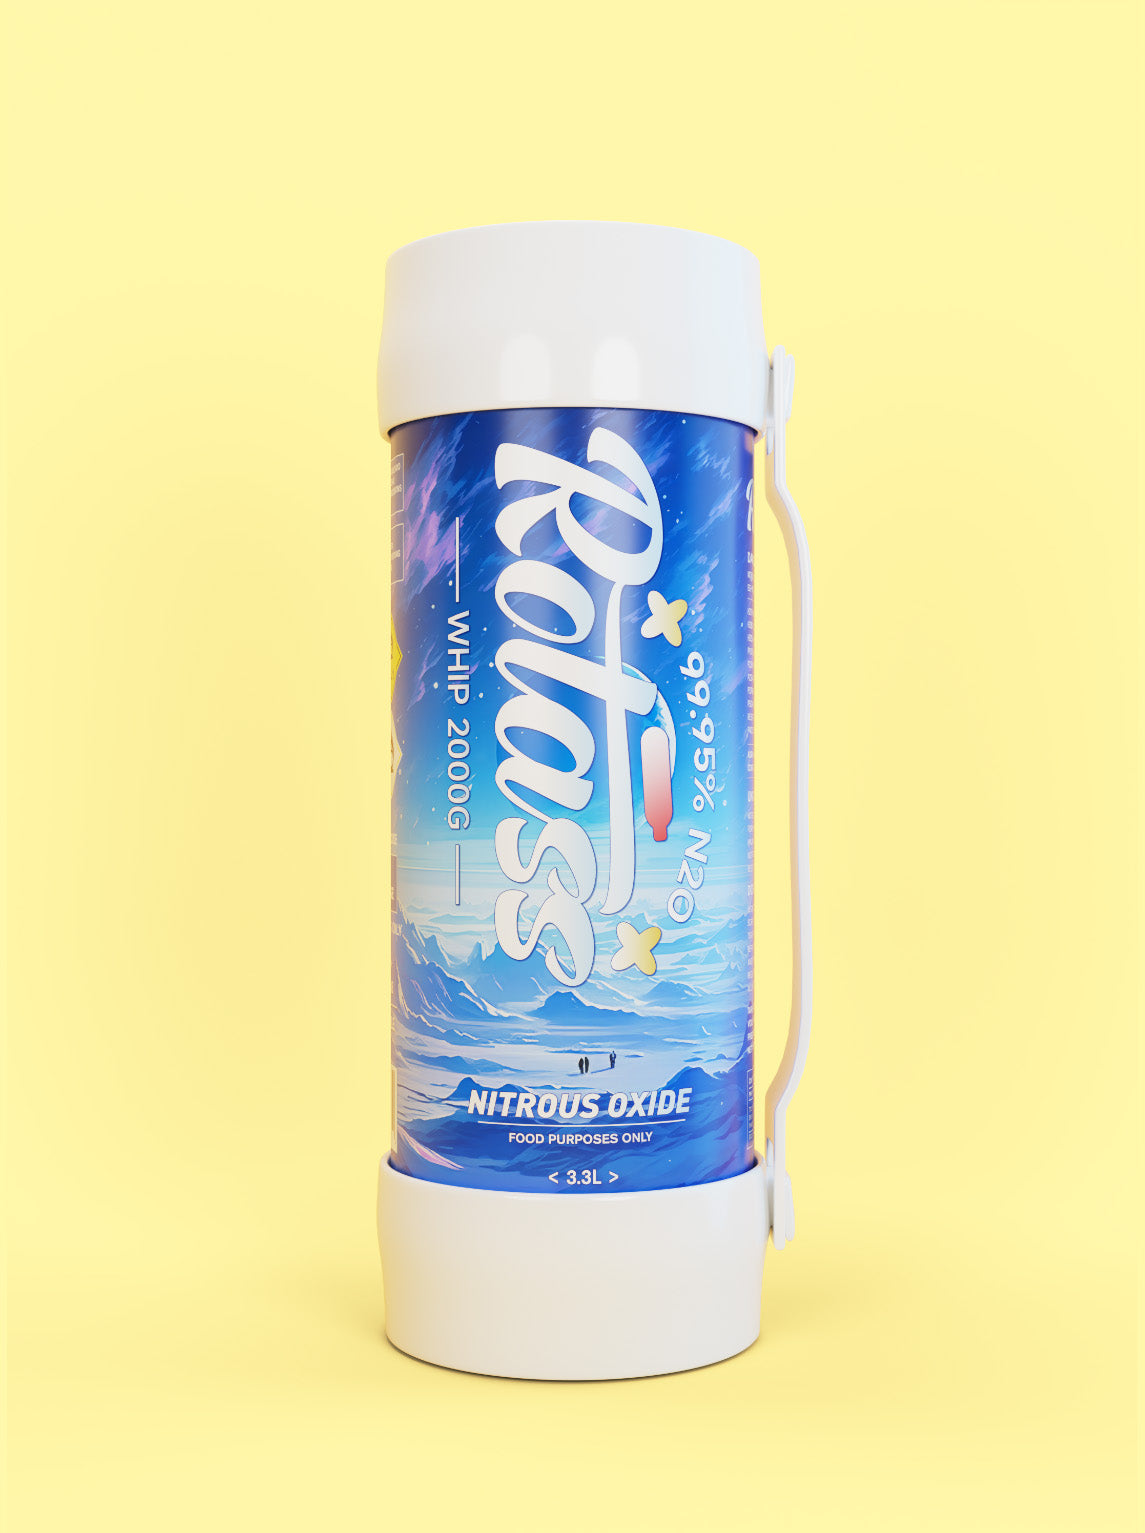 Frontalansicht: Die Gasflasche ist im Antarktis-Style designed, mit dem weißen Logo "Rotass" 2kg.  Unter- und Oberteil der Flasche sind weiß und mit einem Gummiband befestige, sodass eine Tragmöglichkeit gewährleistet ist. Der Hintergrund ist hellgelb.